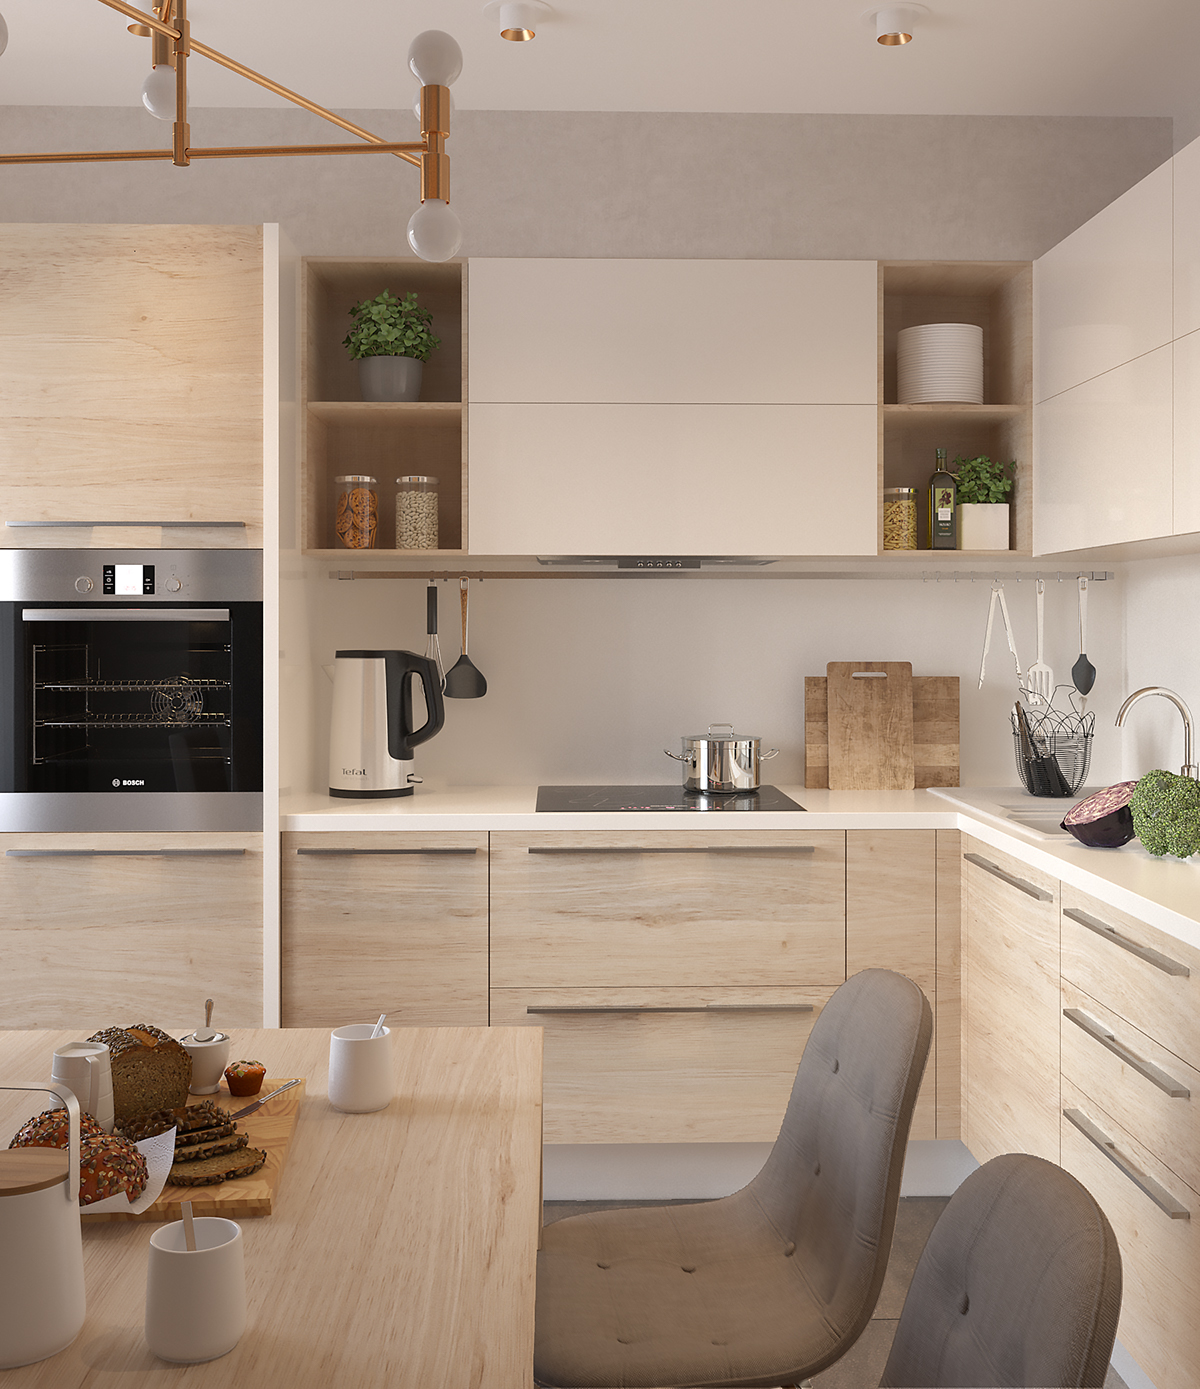 кухня дизайн кухни  дизайн дизайн интерьера kitchen design kitchen